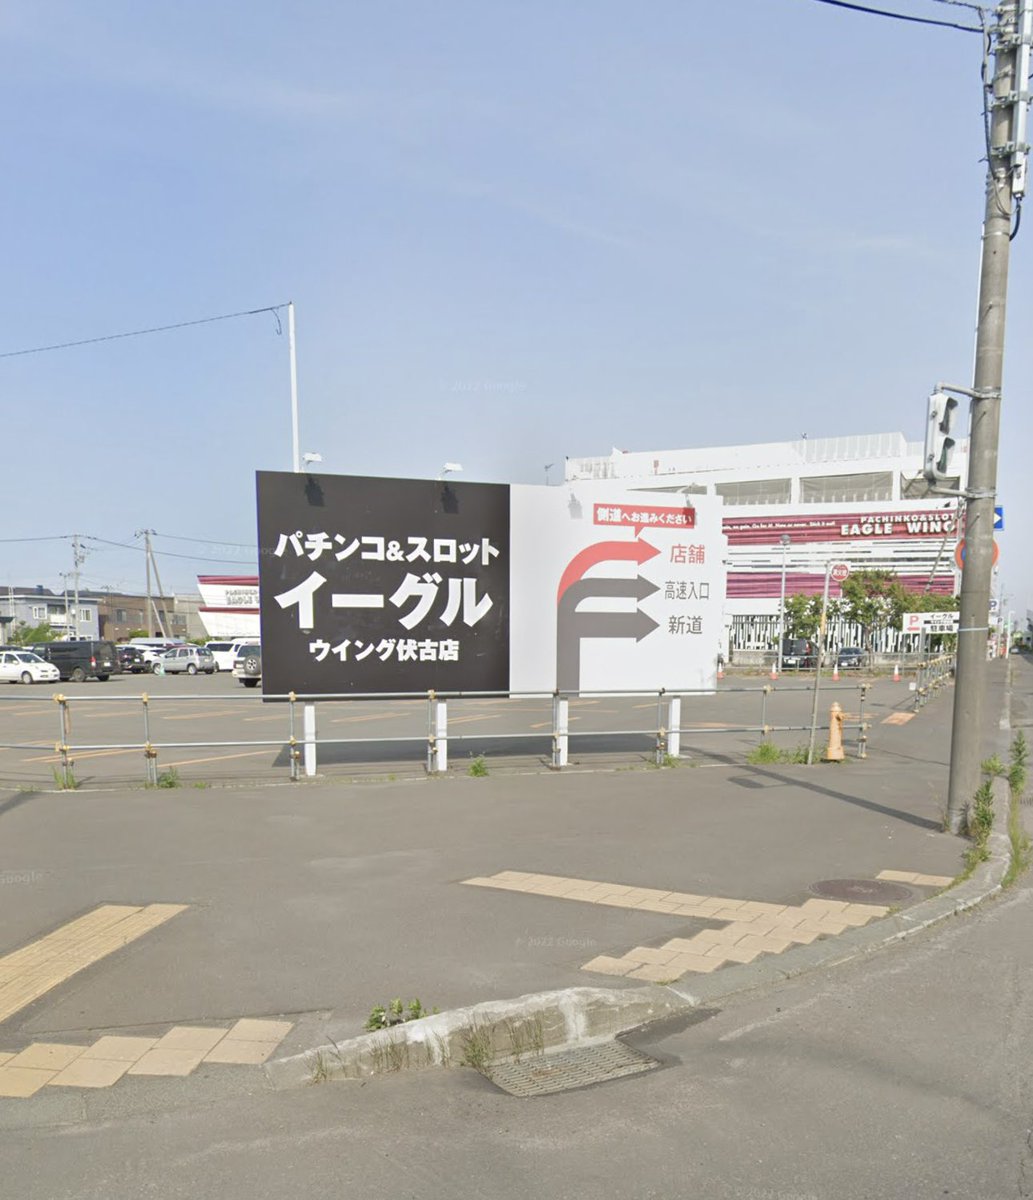 札幌・昔ここに何があったの？Part3 東区伏古、札幌新道沿い。 イーグルウィング伏古店の場所。 昔、安売り王８というディスカウントスーパーがありました。 テレビコマーシャルや折り込みチラシなどで宣伝をよくされていたお店かと思います。…